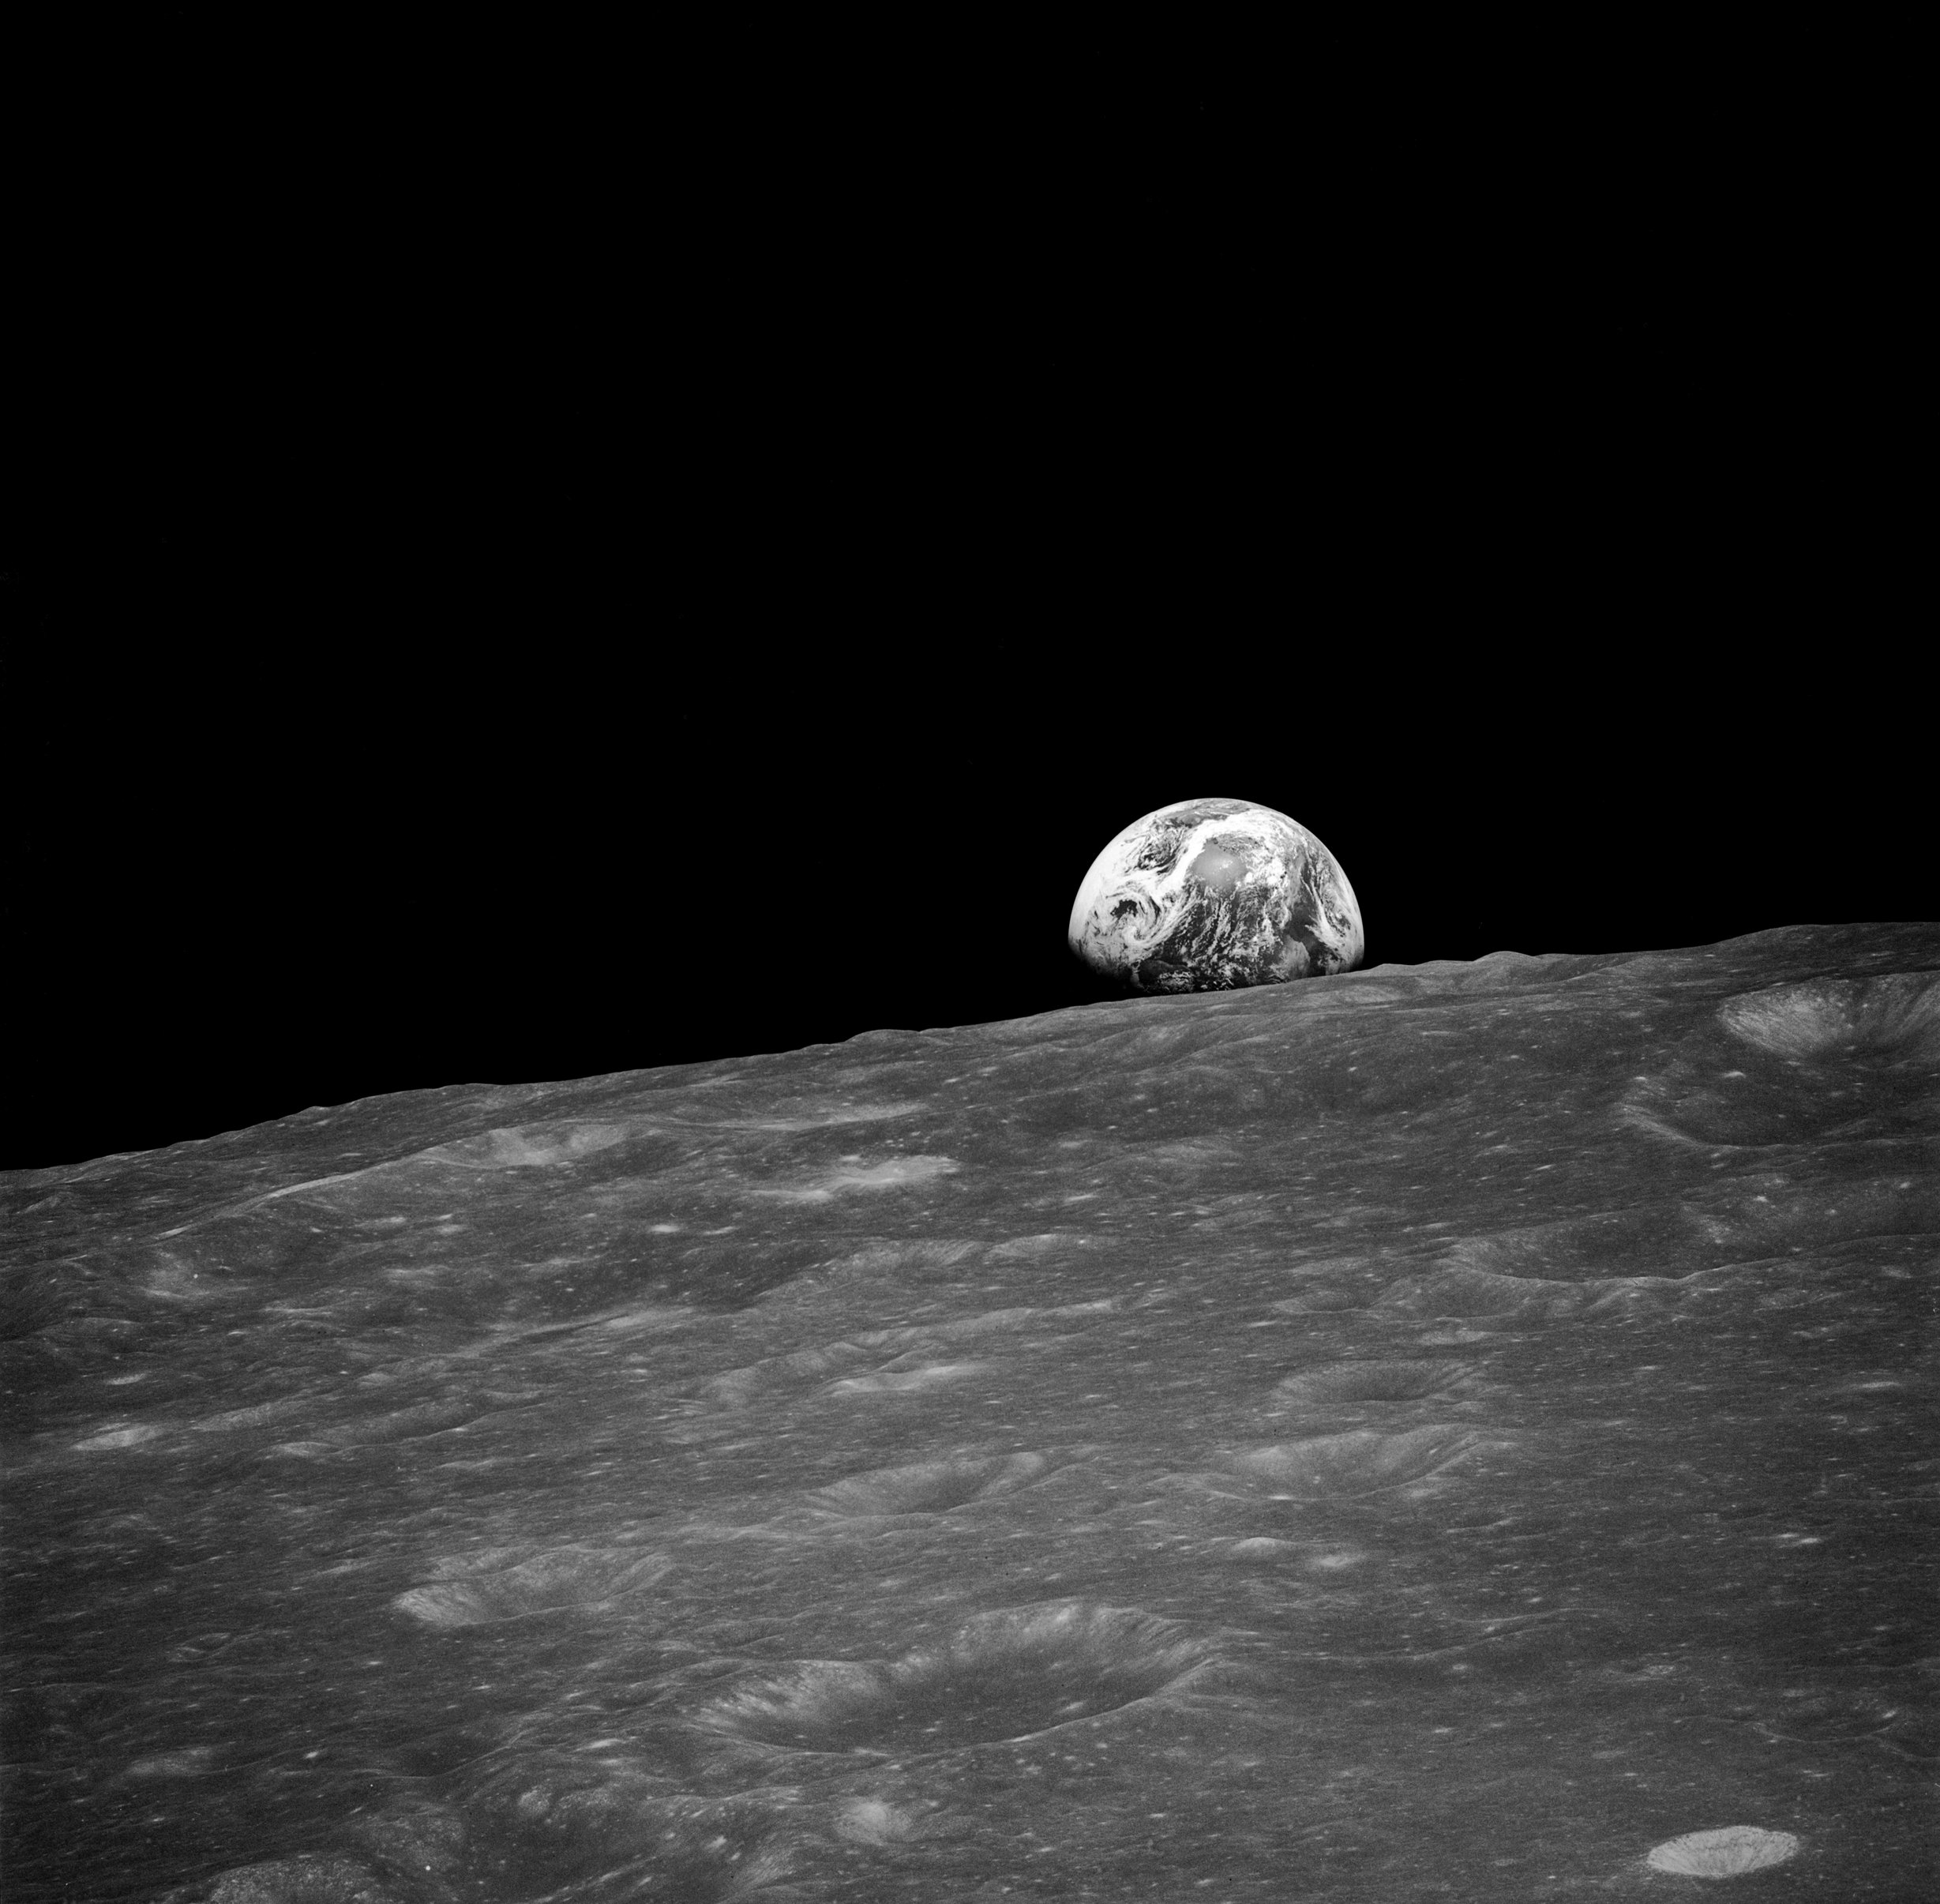 Zer ikusi zuten Apollo 13 misioko astronautek ilargiaren alde ikusezinetan? Orain zeure burua ikus dezakezu